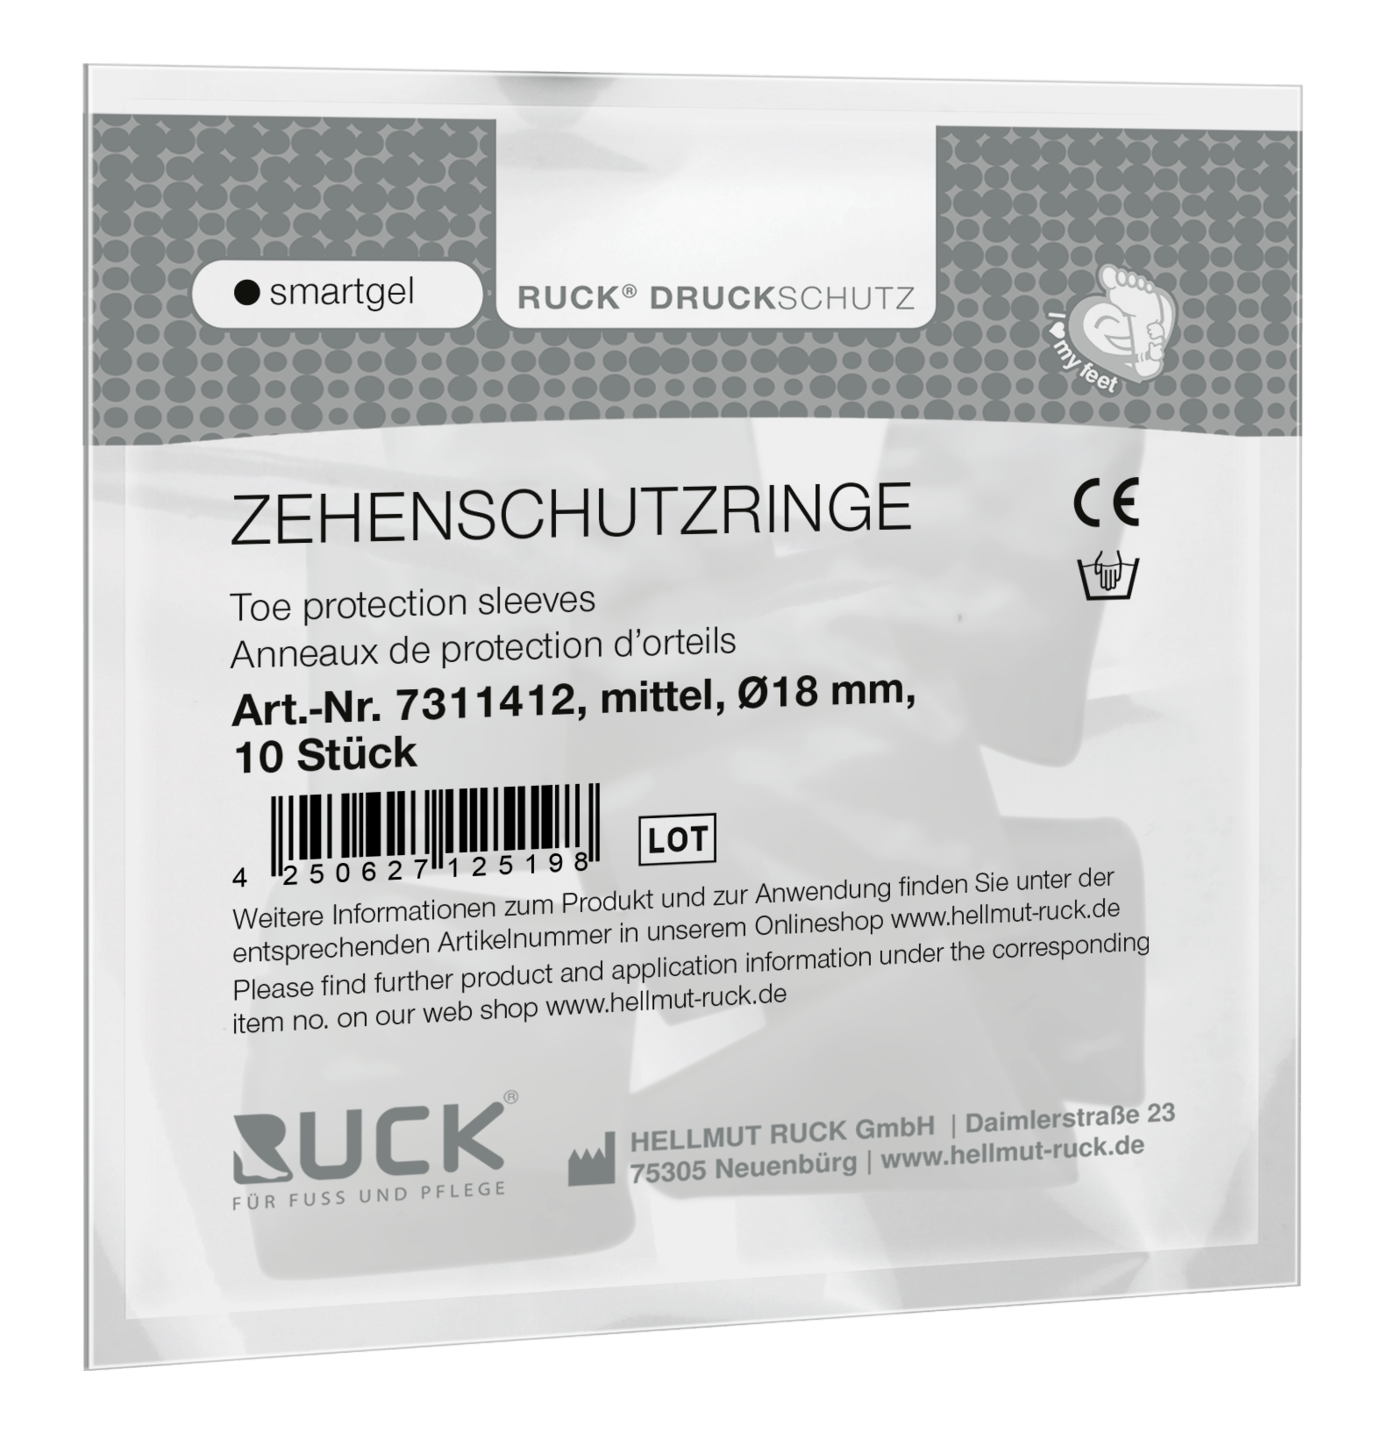 RUCK DRUCKSCHUTZ - Zehenschutzringe